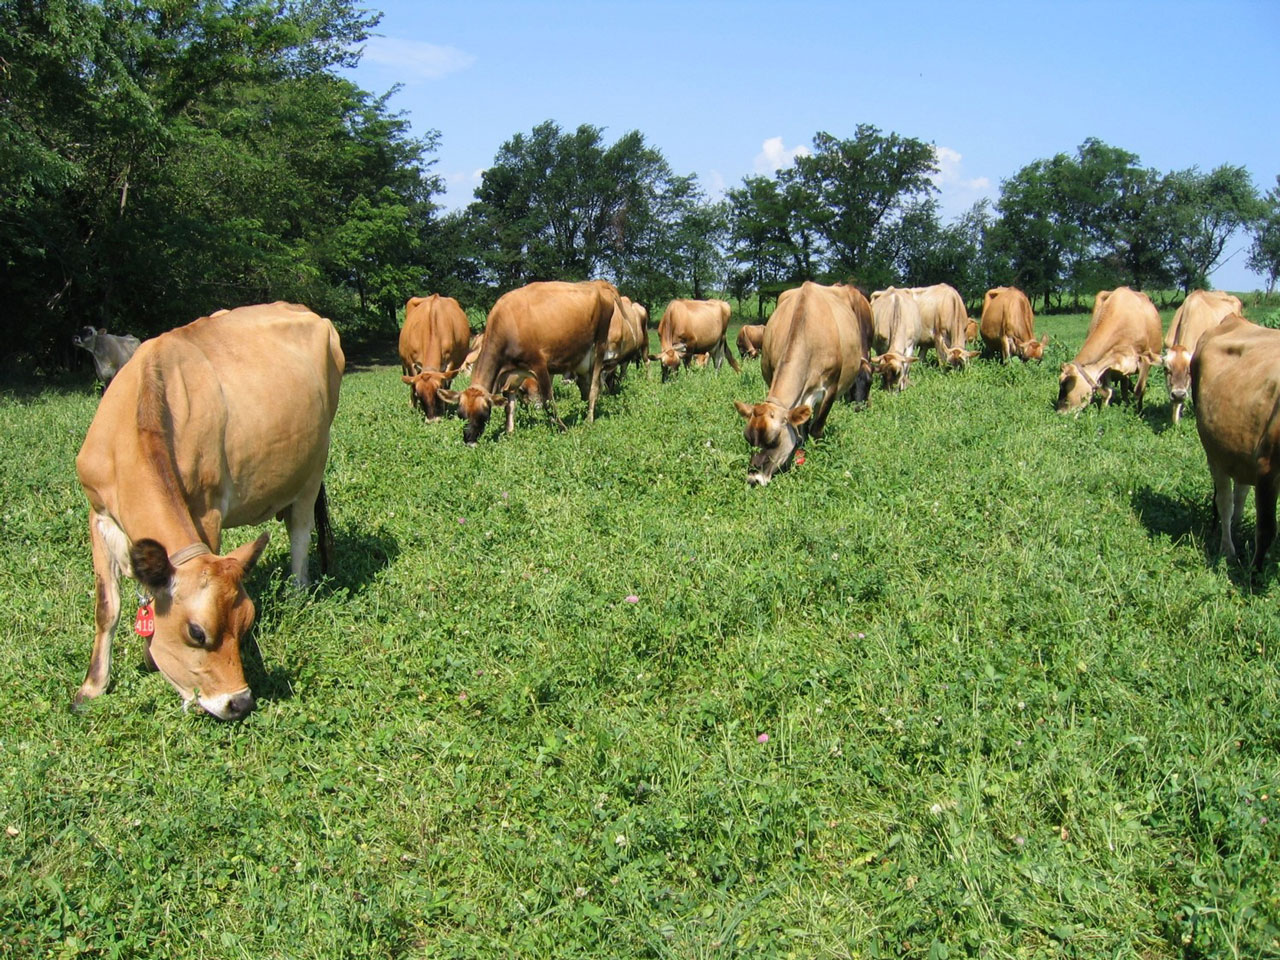 Cows graze in pasture